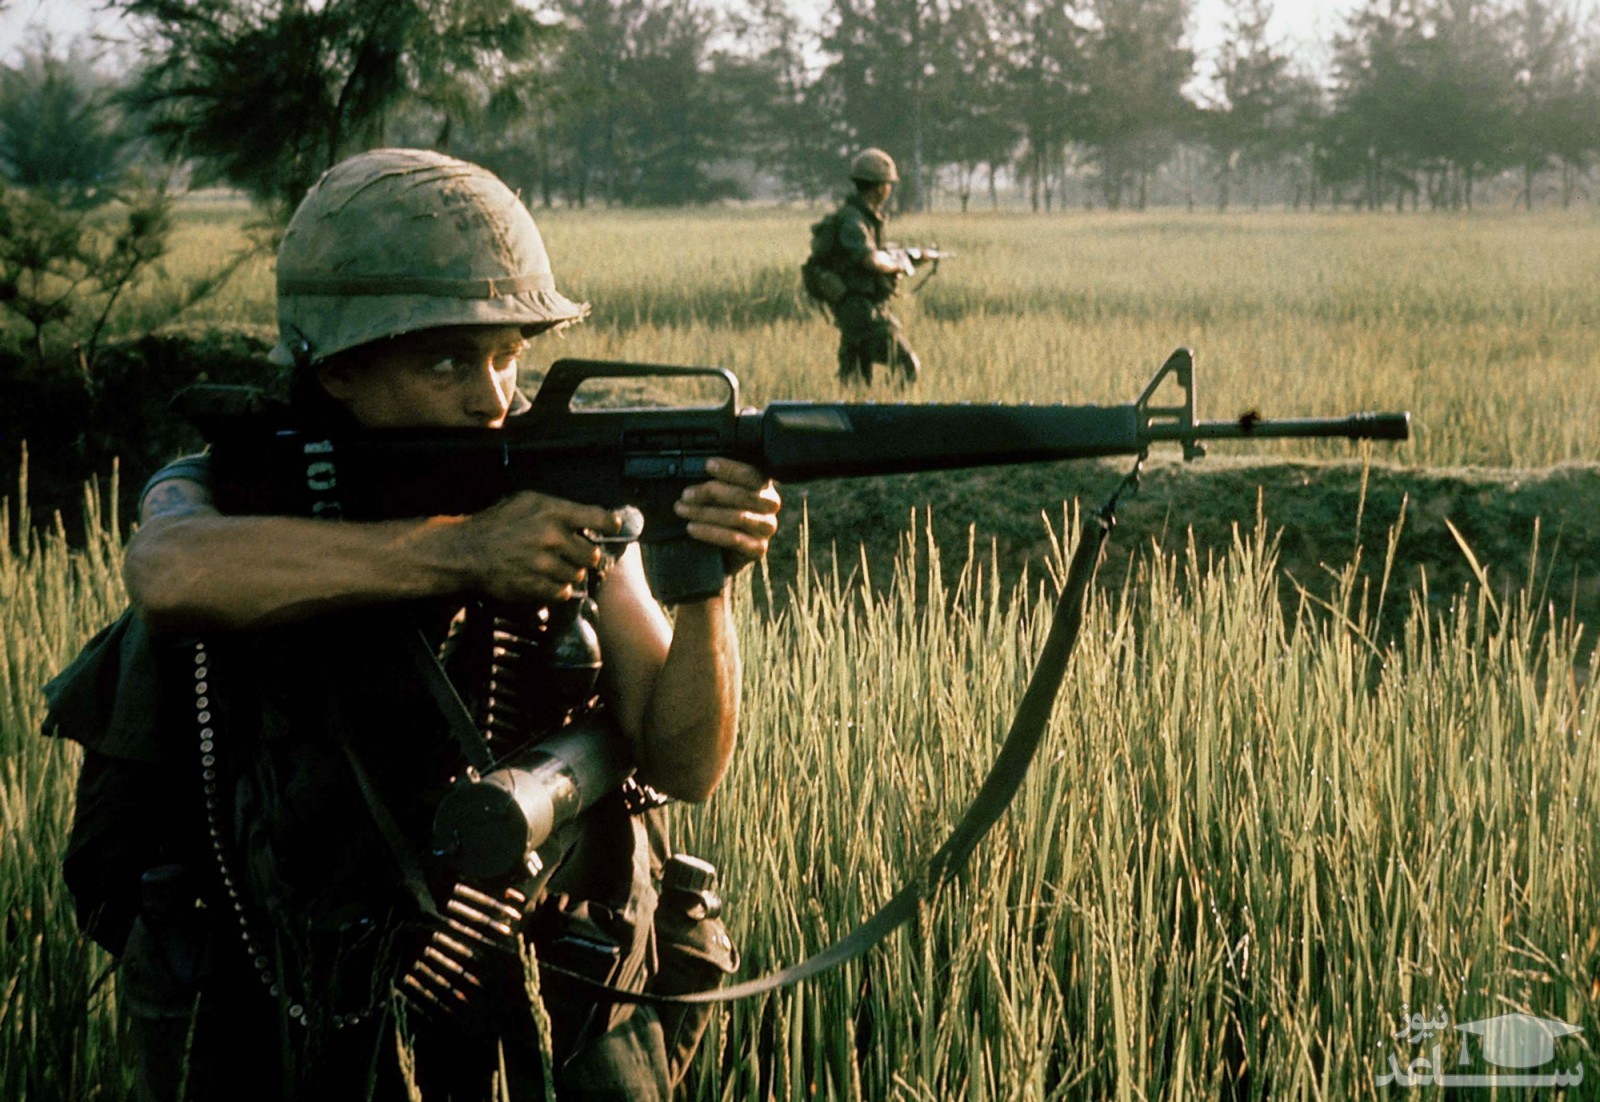 تصاویر دلخراش از کشتار مردم بیگناه در روستای می لای در ویتنام توسط نیروهای آمریکایی